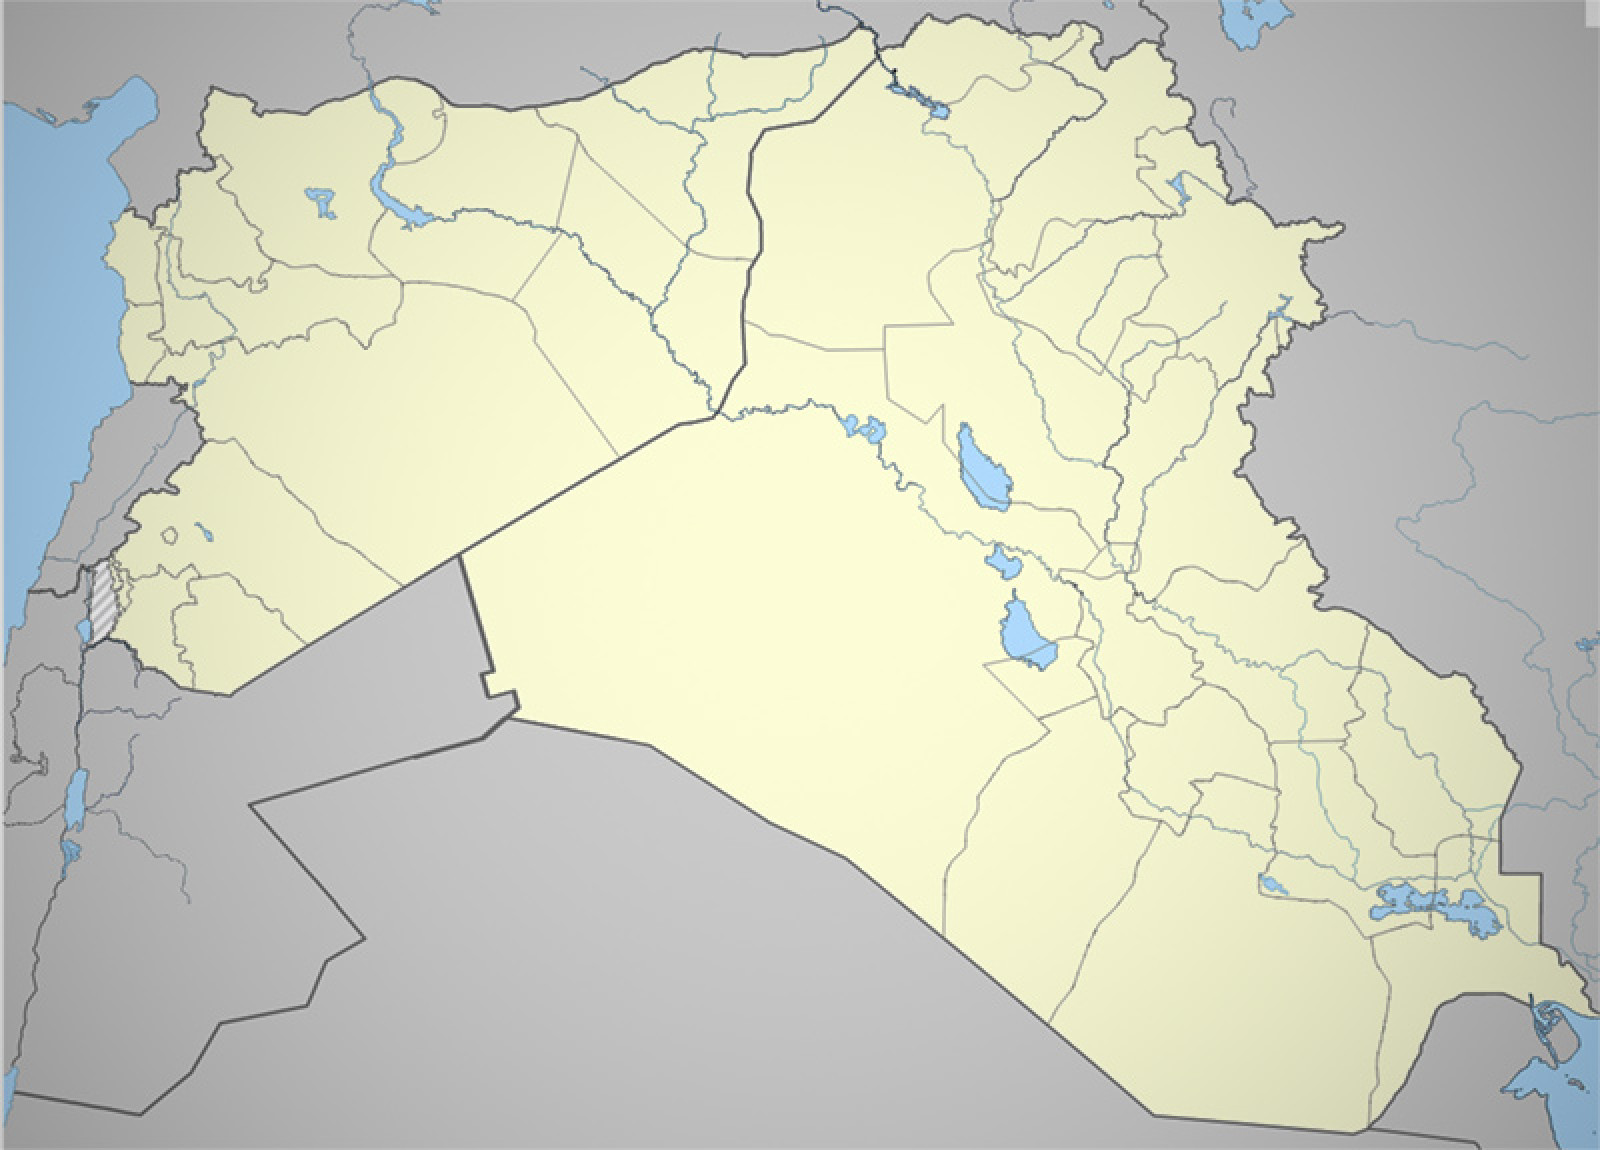 Irak/Syrie: Daesh, comment ça marche ? - Cercle K2